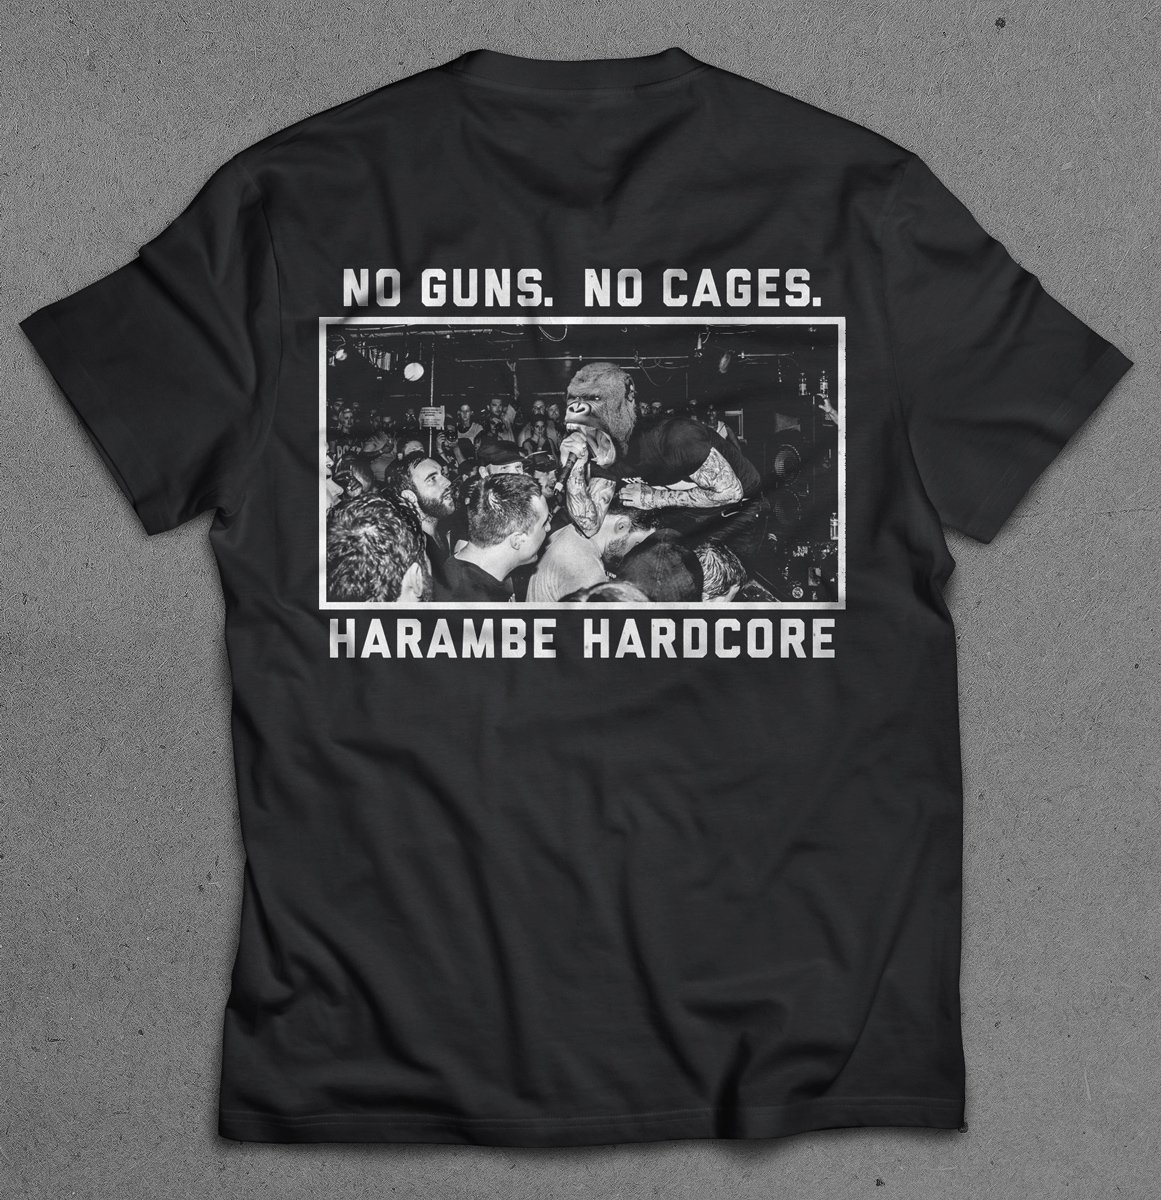 harambe hardcore shirt off 52% - www 